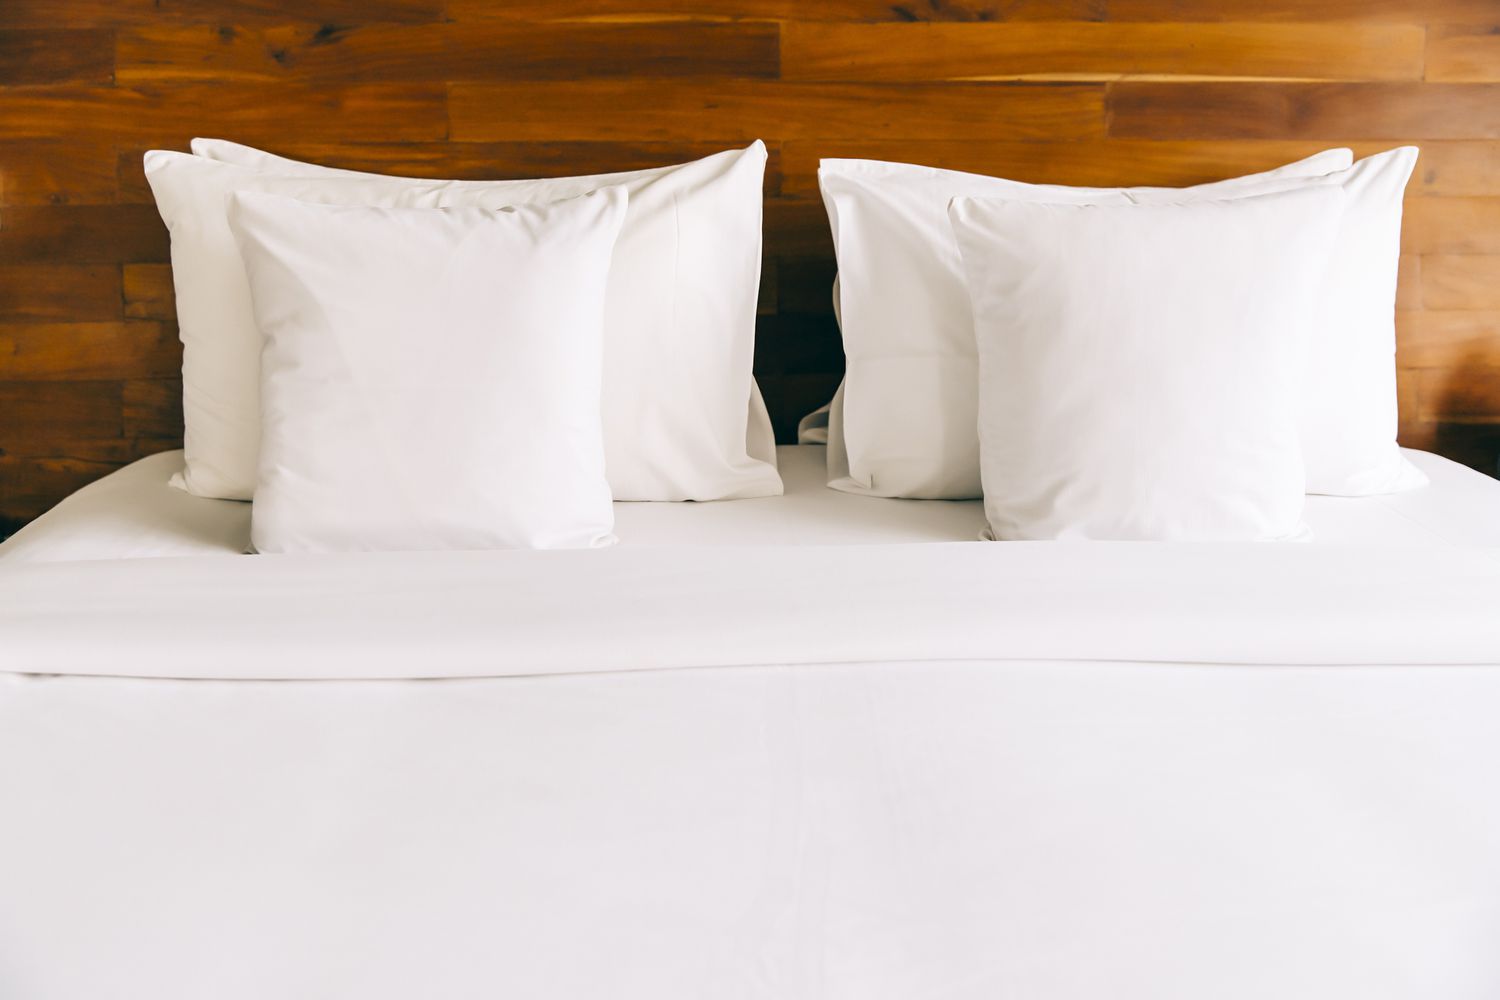 Ein gemachtes Bett mit weißen Laken und Kissen vor einem Holzkopfteil.